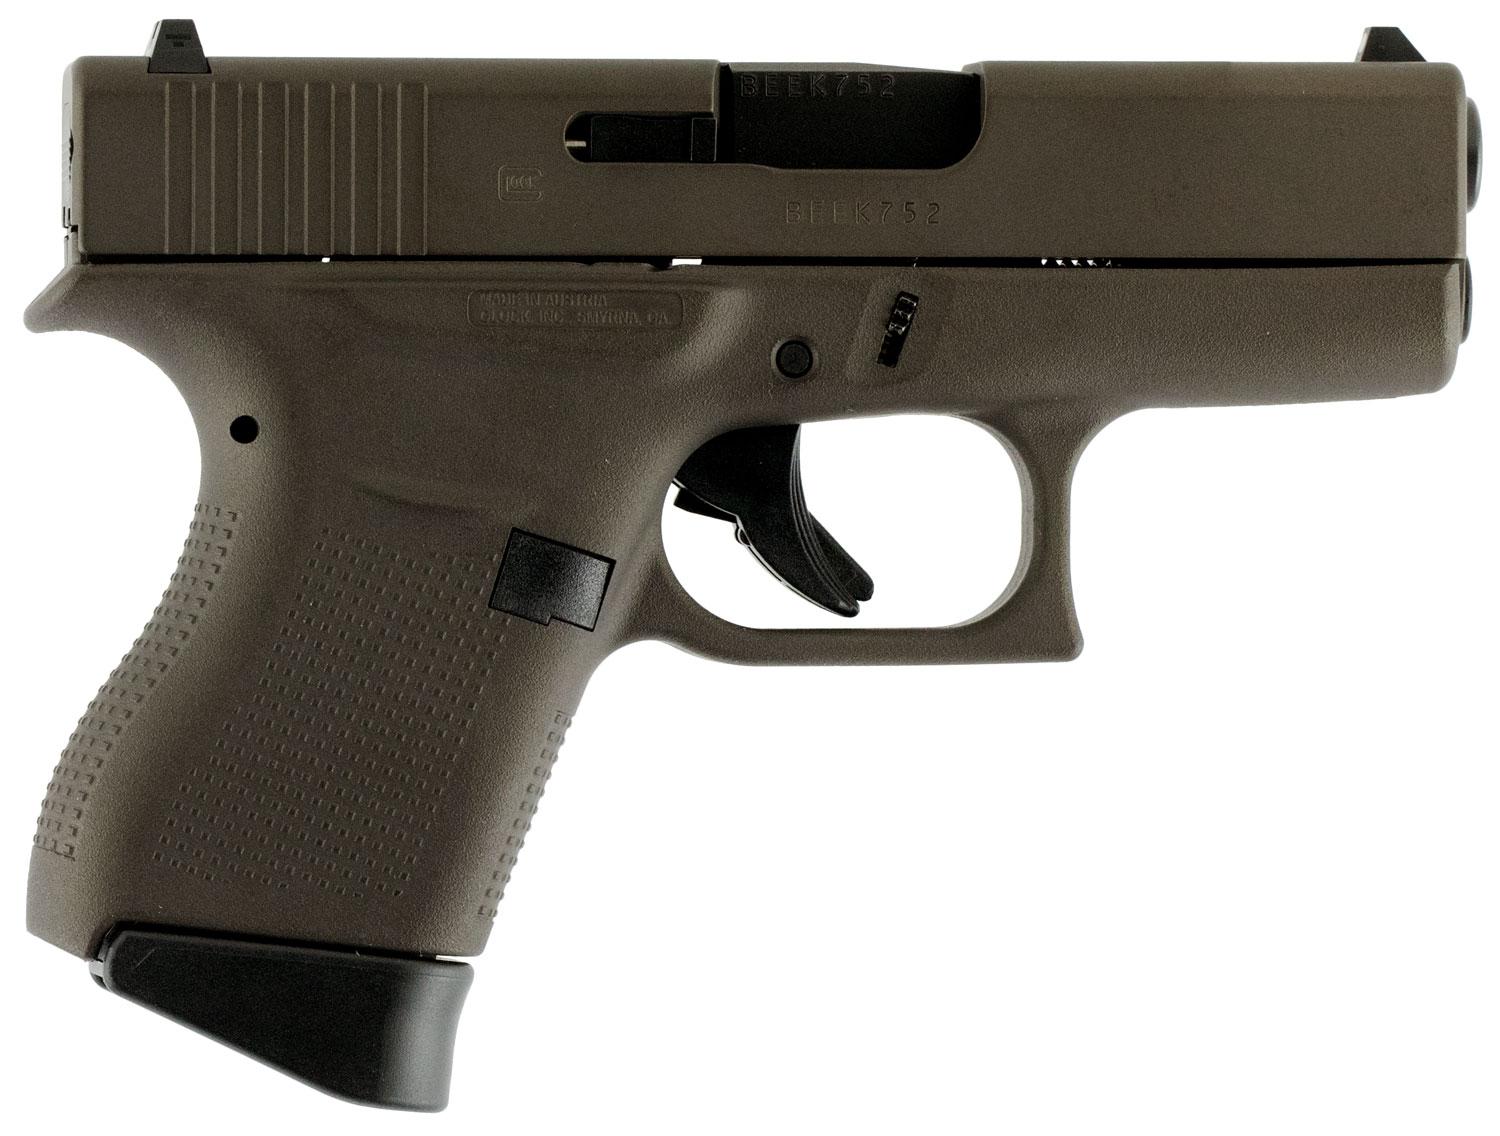 Glock G43 Pistol UI4350204, 9mm Luger, 3.39", Midnight Bronze Polymer Grip/Frame, Midnight Bronze Cerakote Finish, 6 Rds